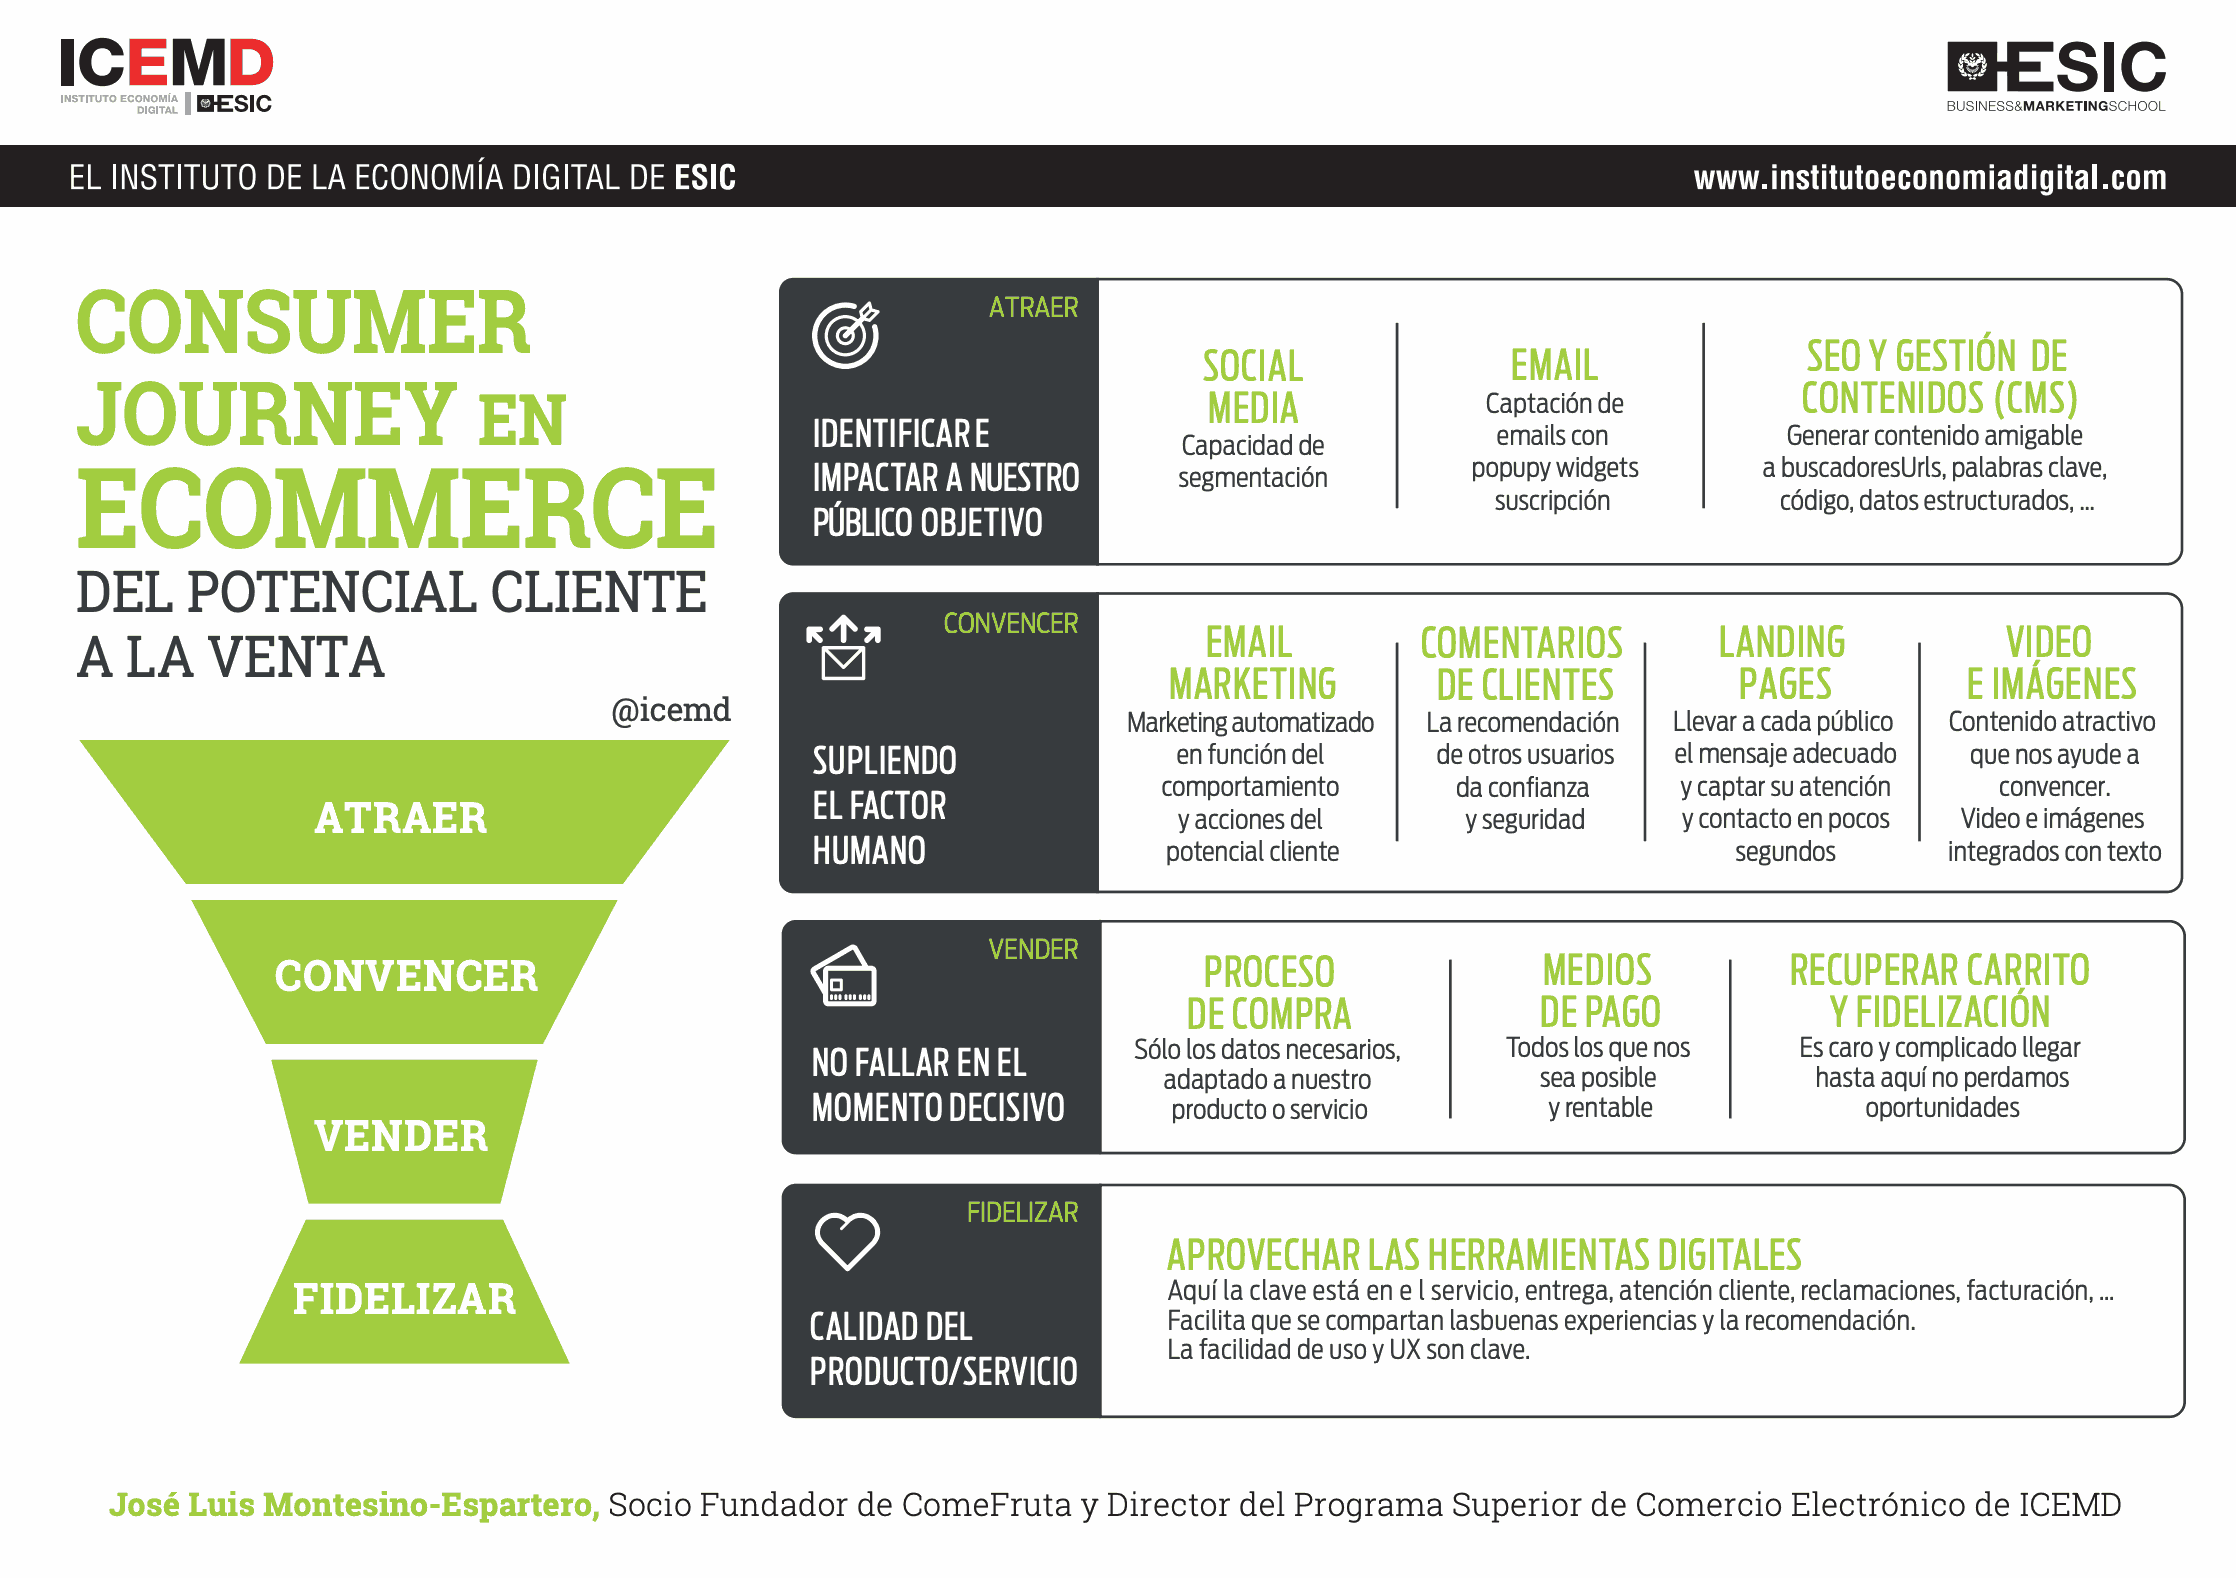 El Customer Journey en Ecommerce